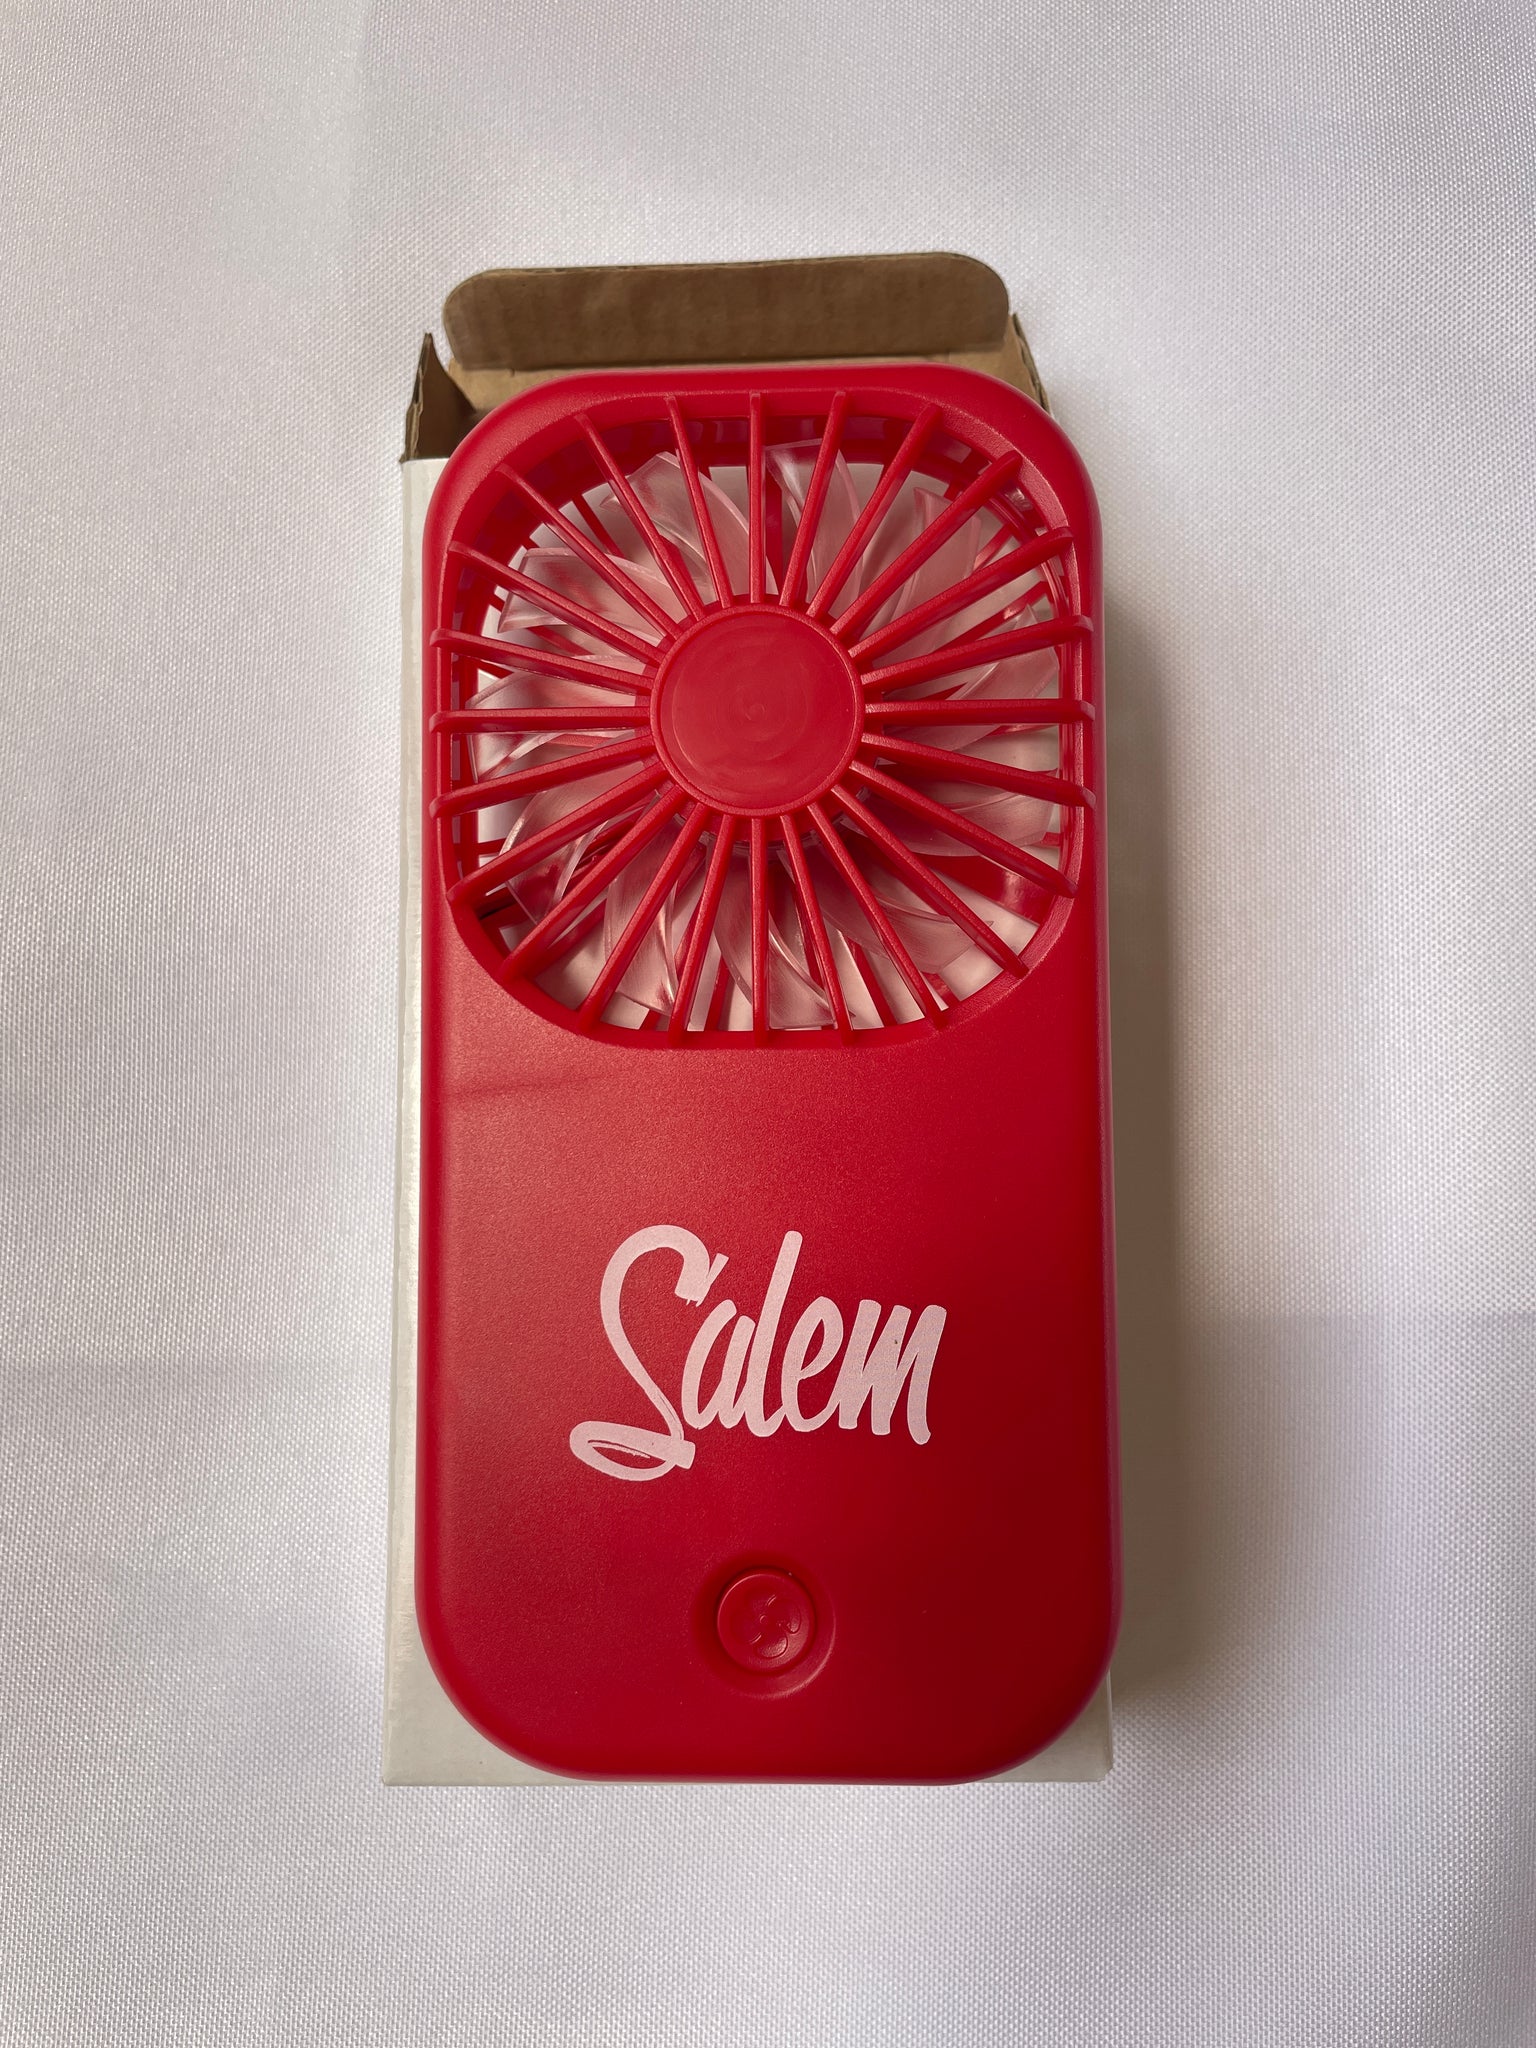 Salem portable fan